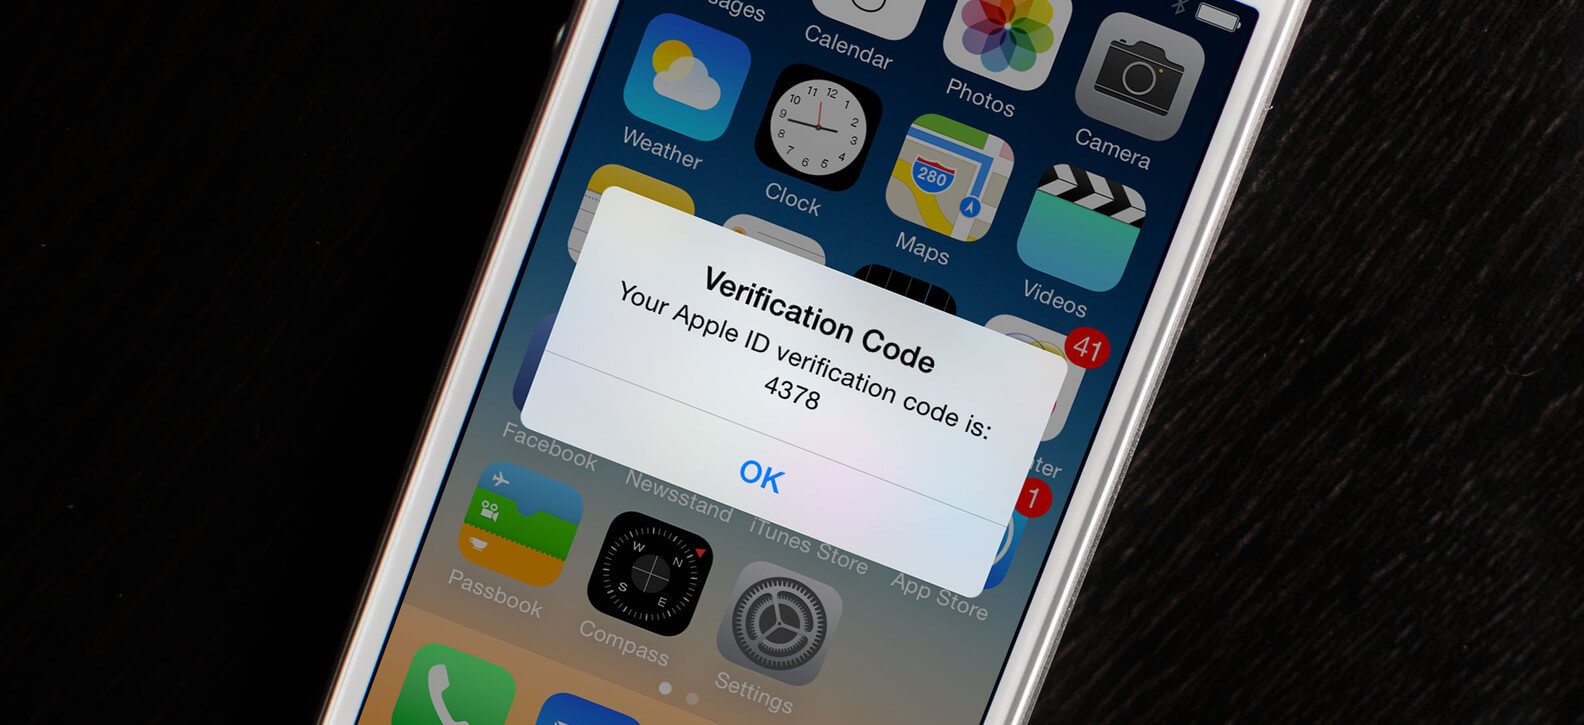 Apple хочет полностью отказаться от паролей. Каким образом?